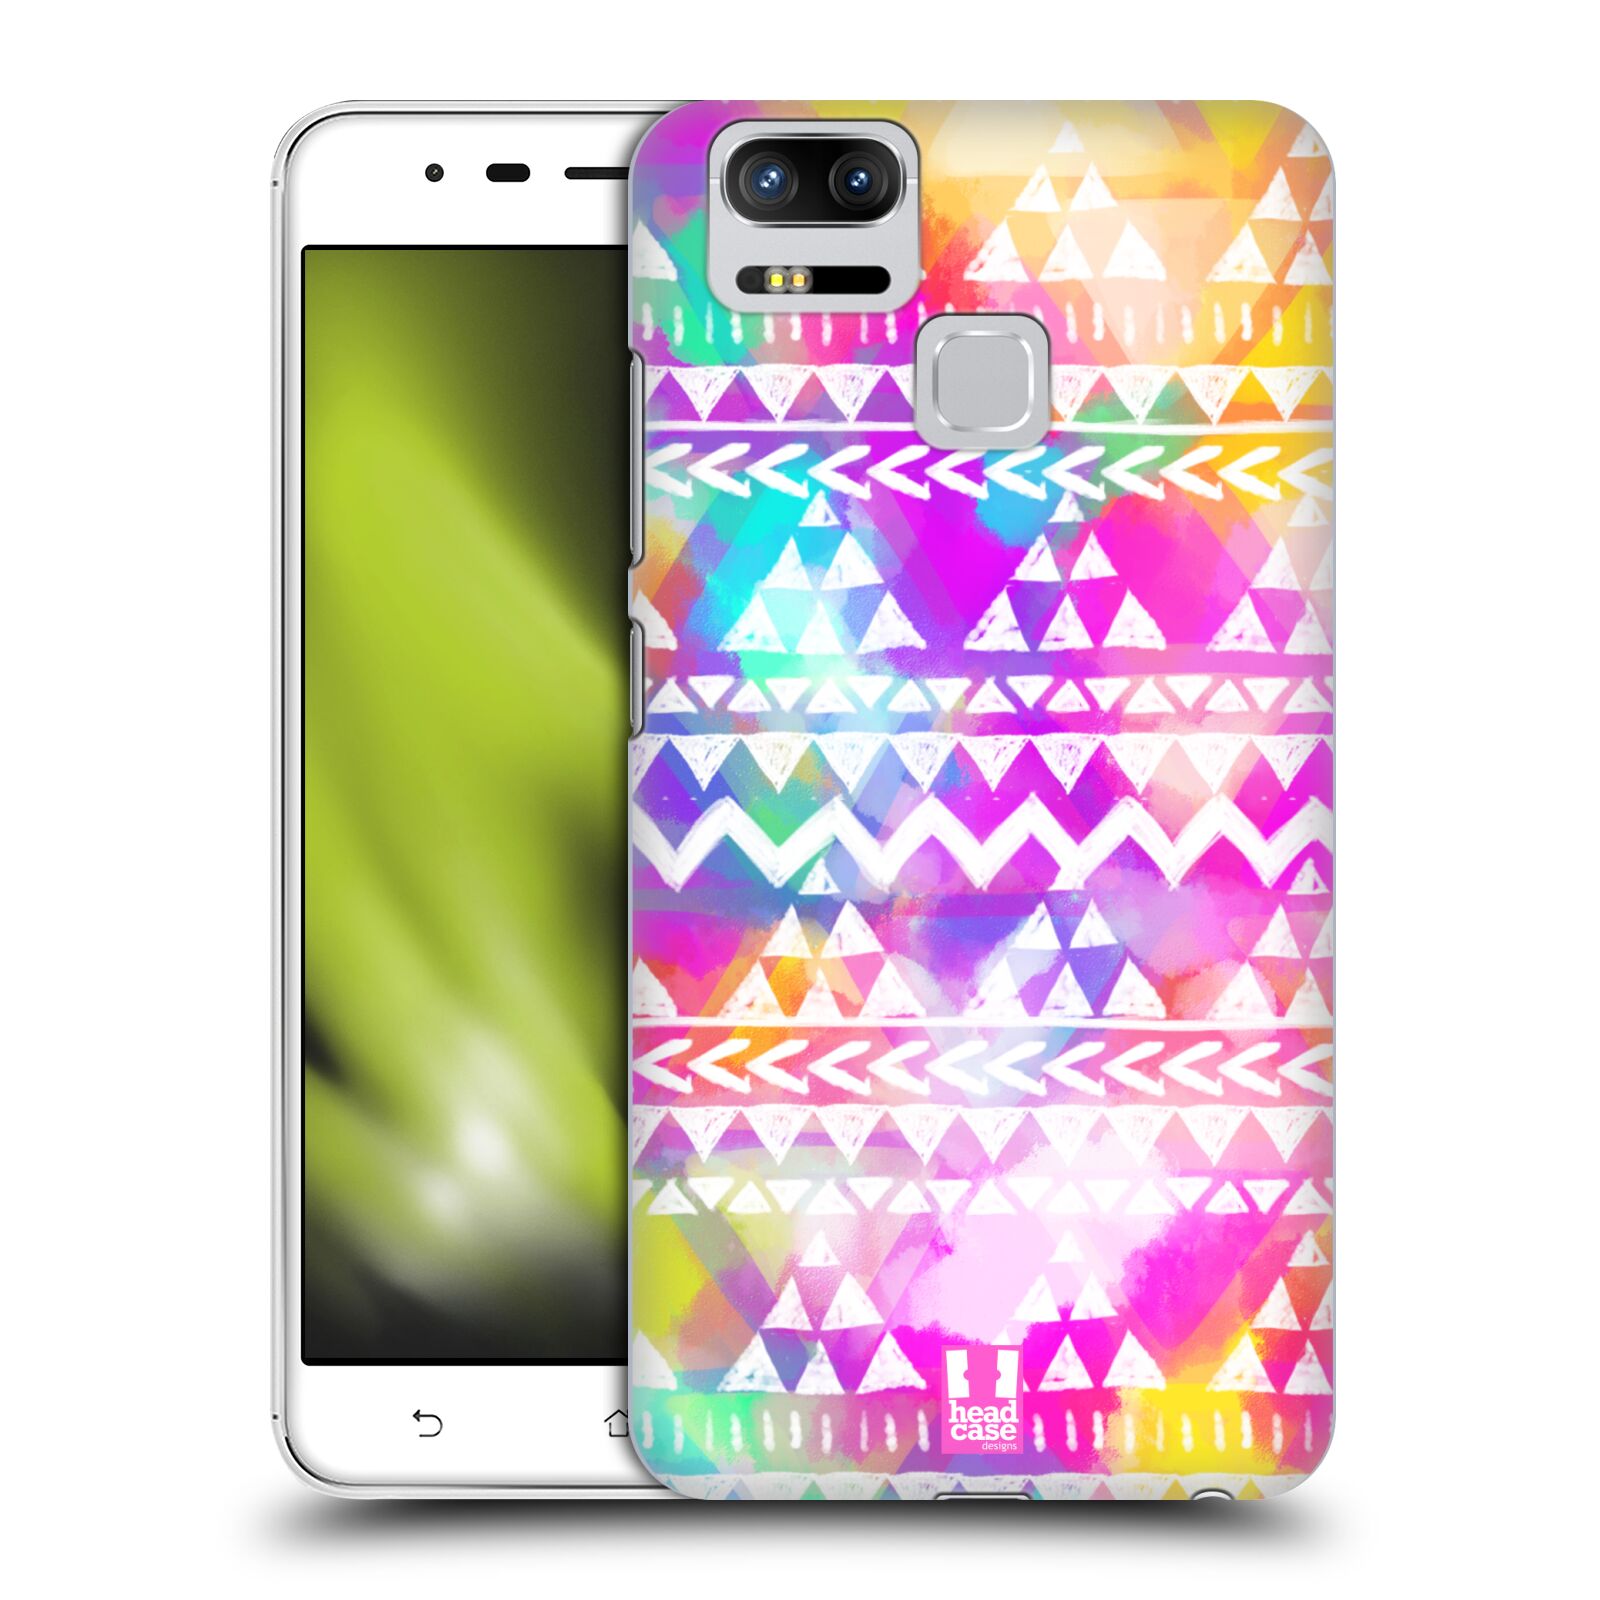 HEAD CASE plastový obal na mobil Asus Zenfone 3 Zoom ZE553KL vzor CIK CAK barevné znaky ZÁŘIVA RŮŽOVÁ